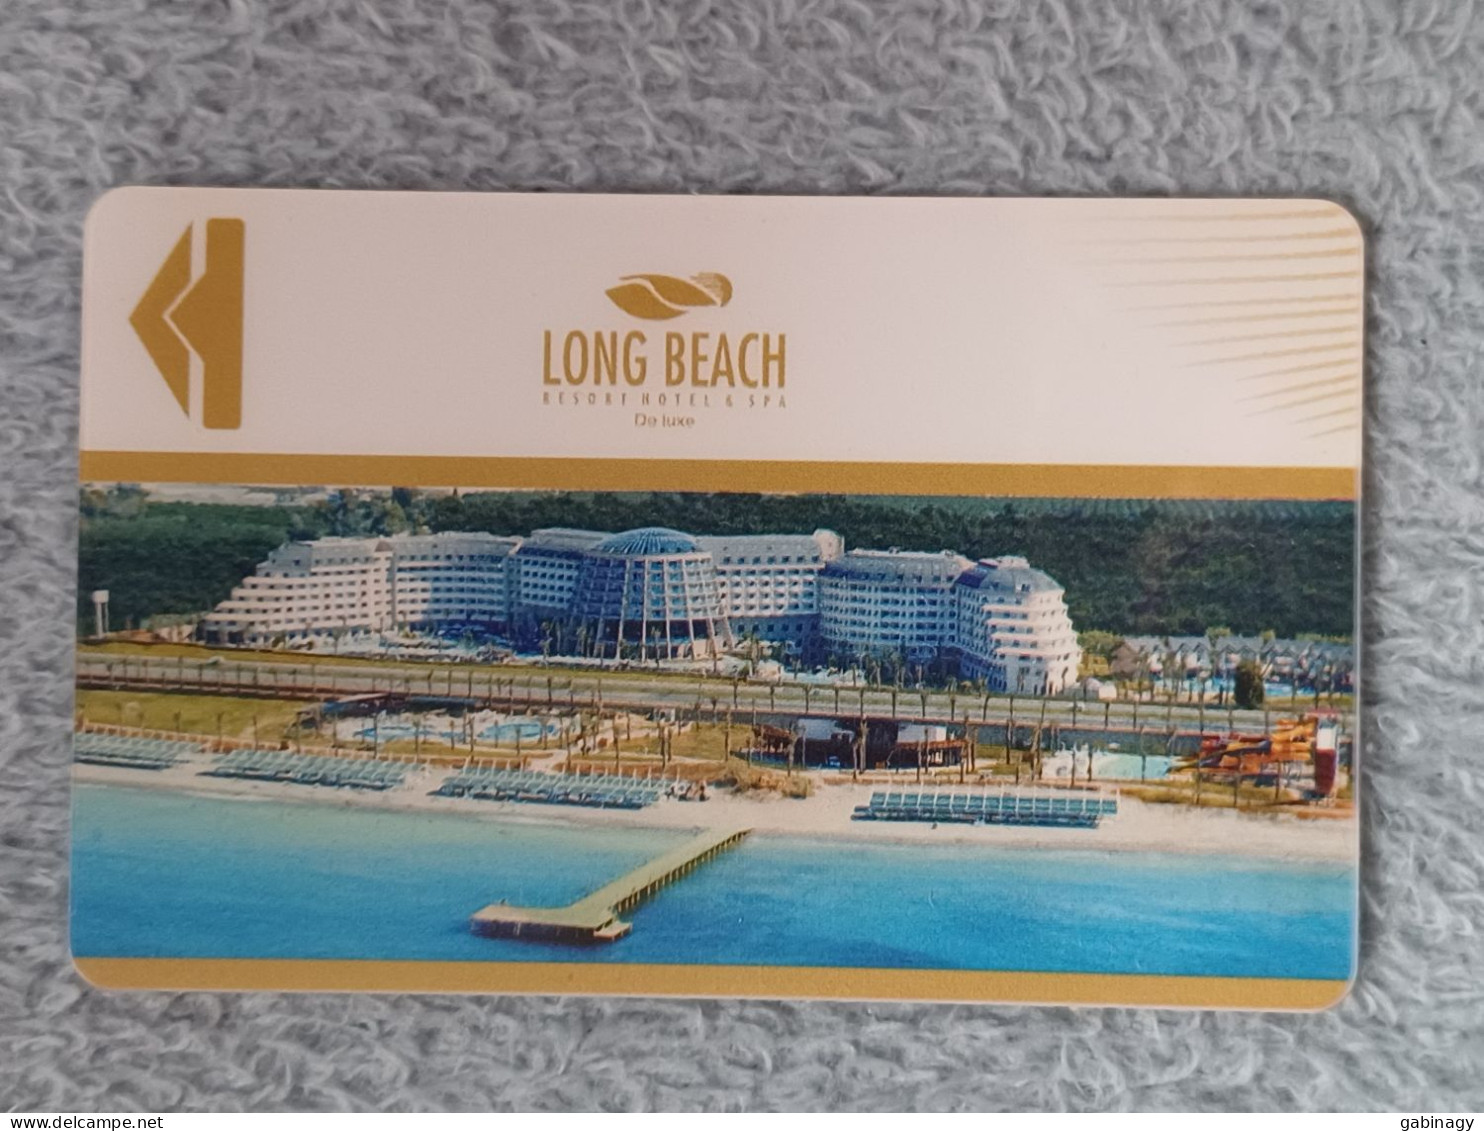 HOTEL KEYS - 2566 - TURKEY - LONG BEACH - Hotelsleutels (kaarten)